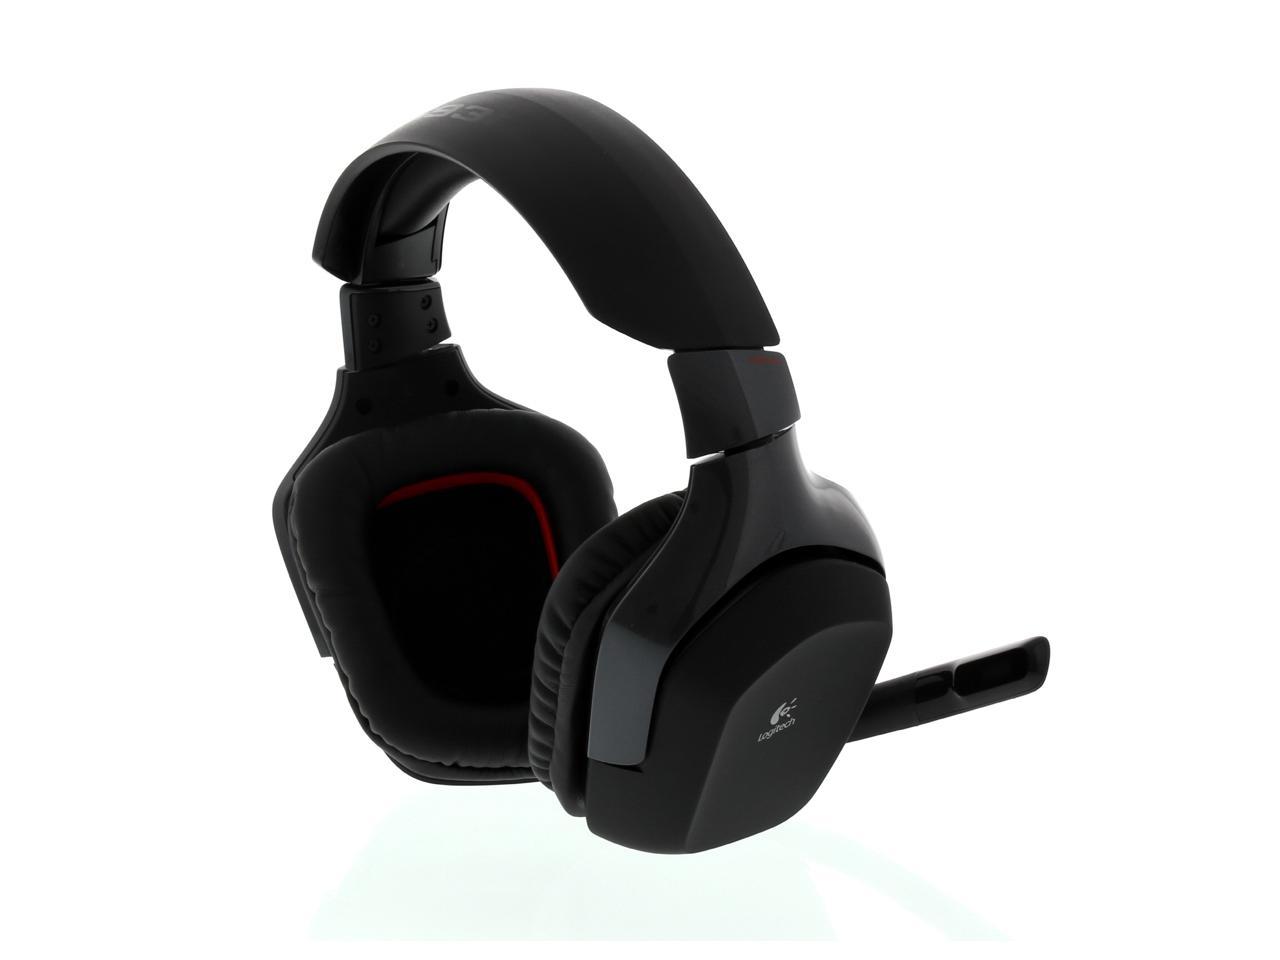 Verbetering Afgeschaft Elektrisch Logitech Wireless Gaming Headset G930 7.1 Wireless Headphones - Newegg.com